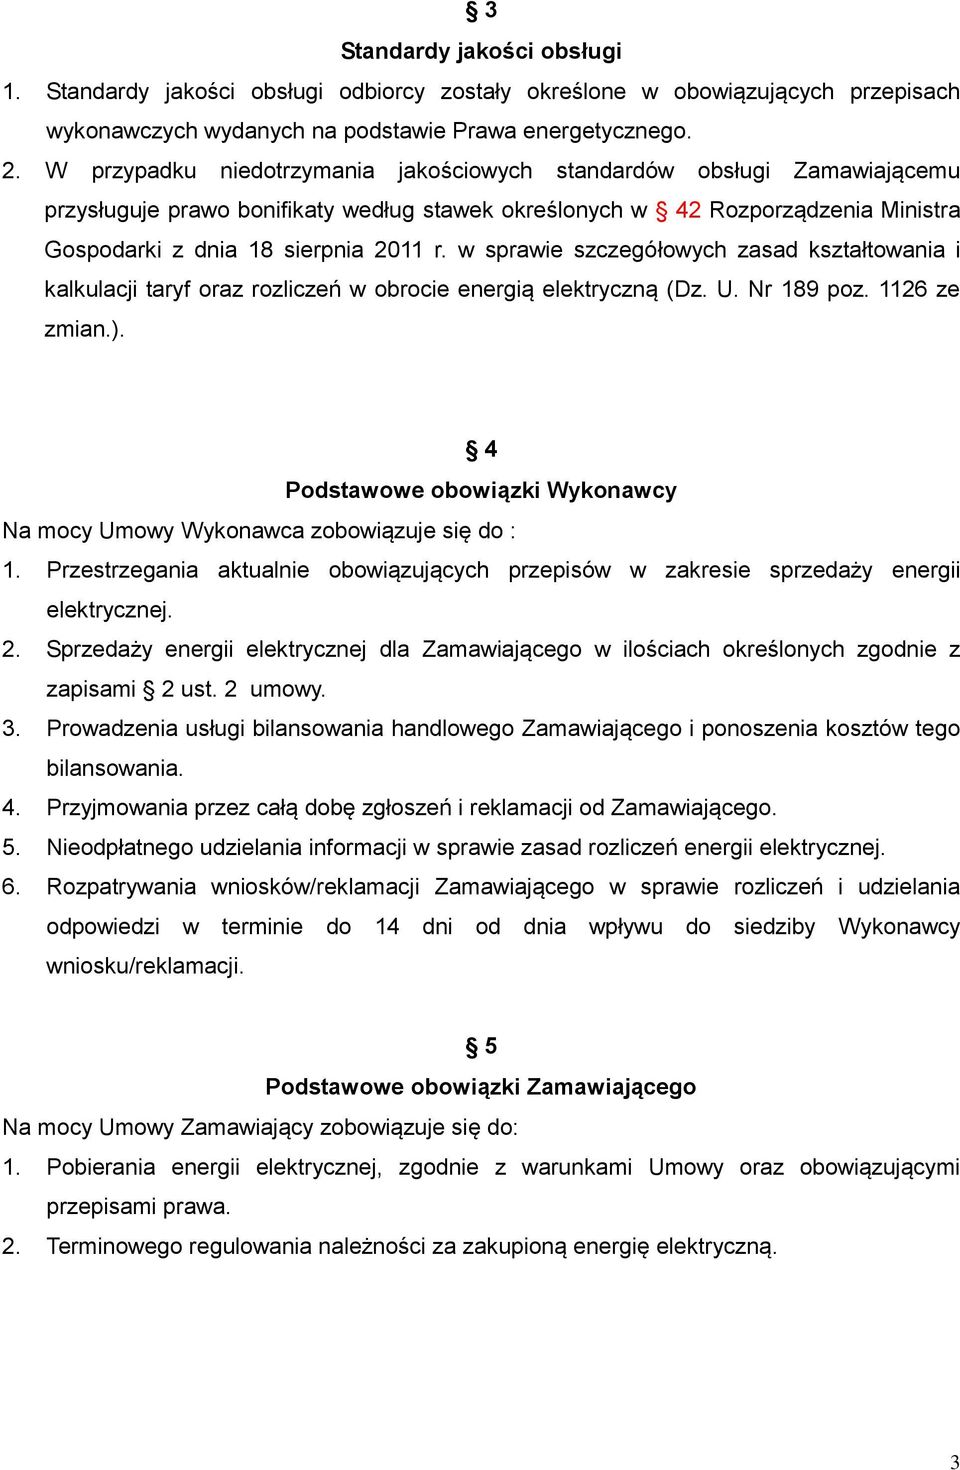 w sprawie szczegółowych zasad kształtowania i kalkulacji taryf oraz rozliczeń w obrocie energią elektryczną (Dz. U. Nr 189 poz. 1126 ze zmian.).